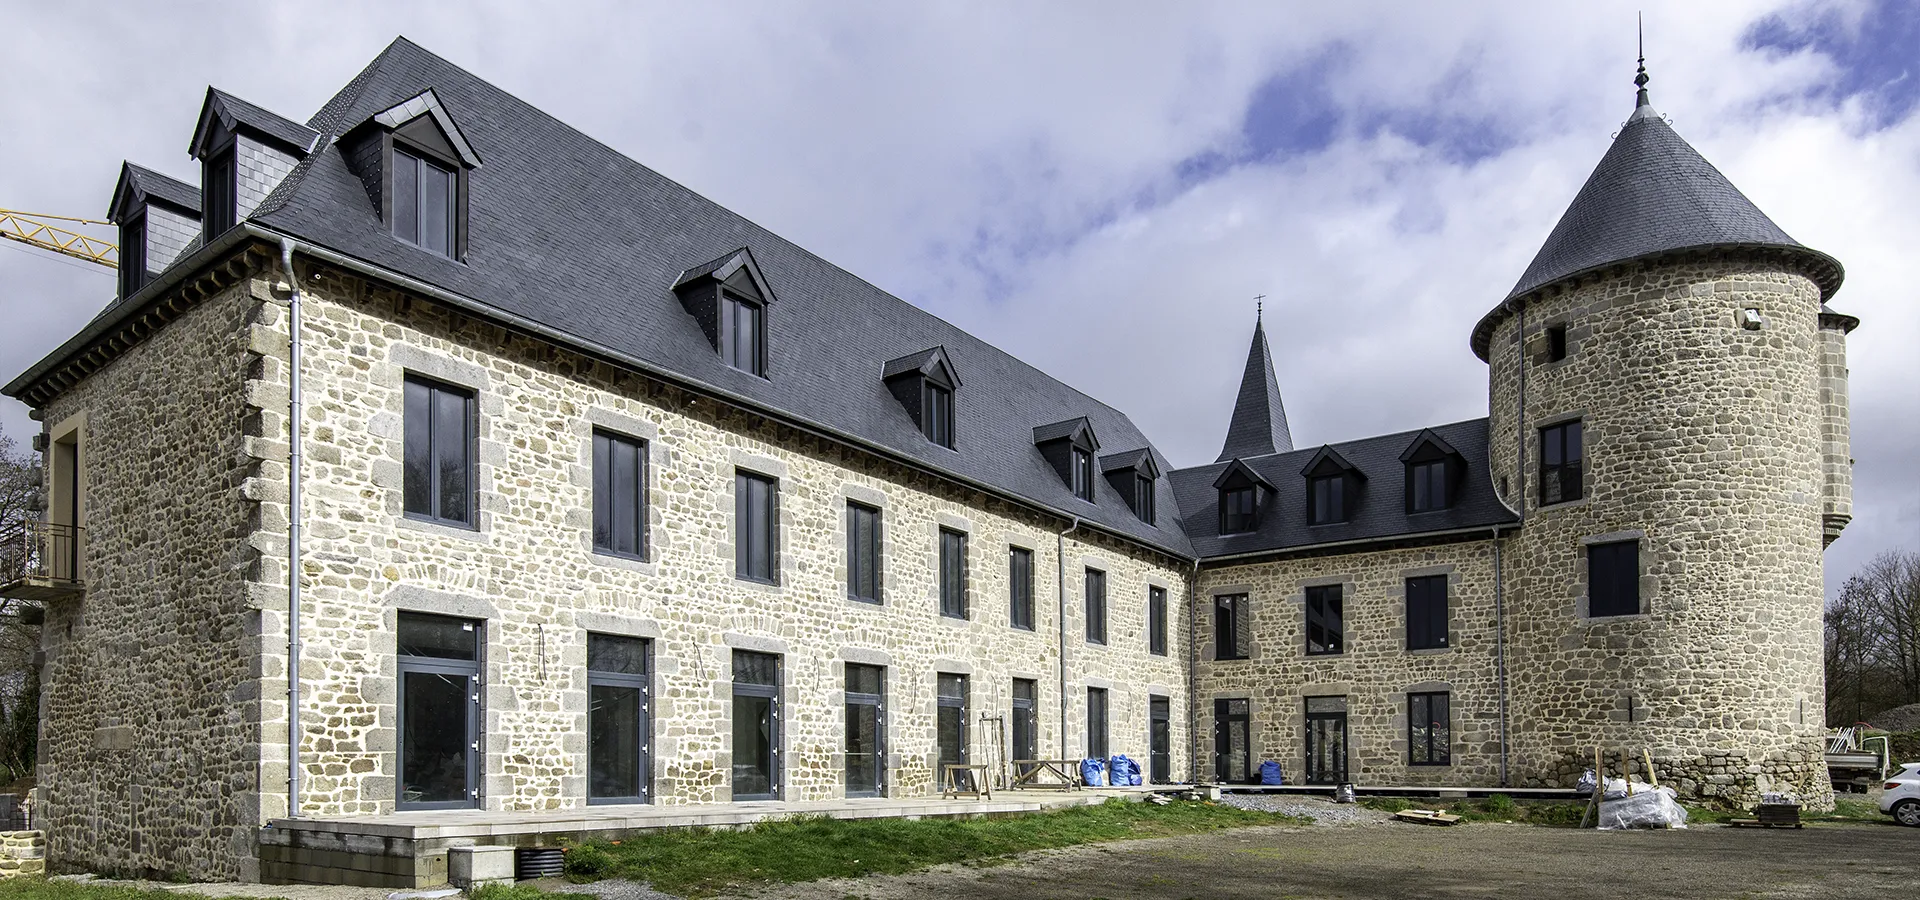 Le château du Theil à Ussel est en cours de rénovation et deviendra bientôt un hôtel 4 étoiles